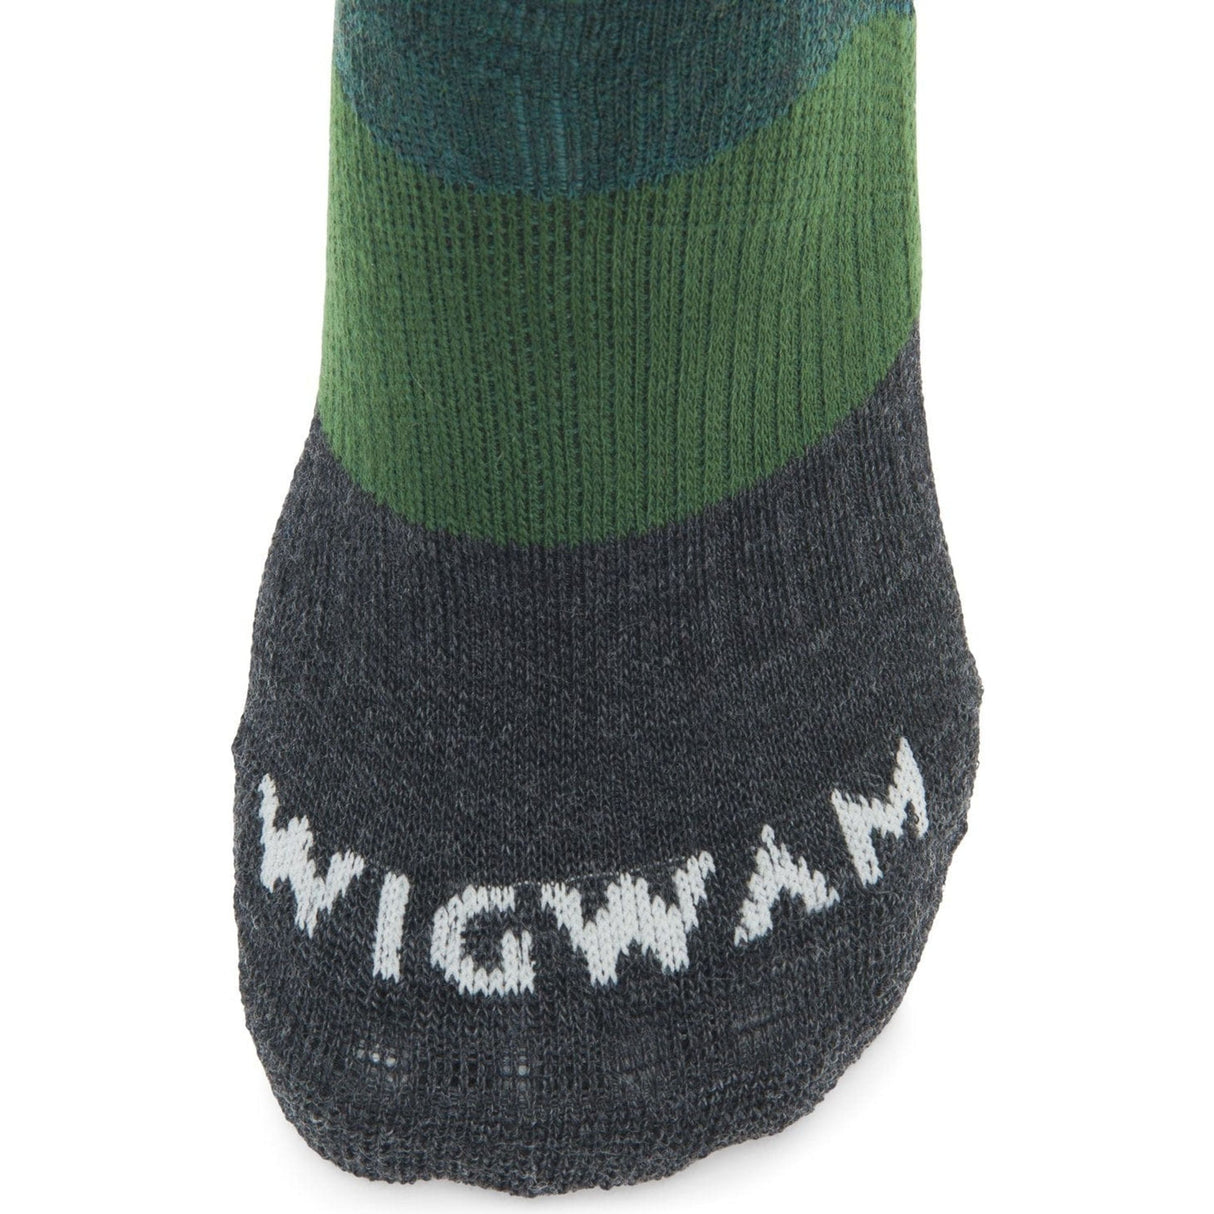 Wigwam Trail Junkie Merino Wool Lightweight Quarter Socks  - 